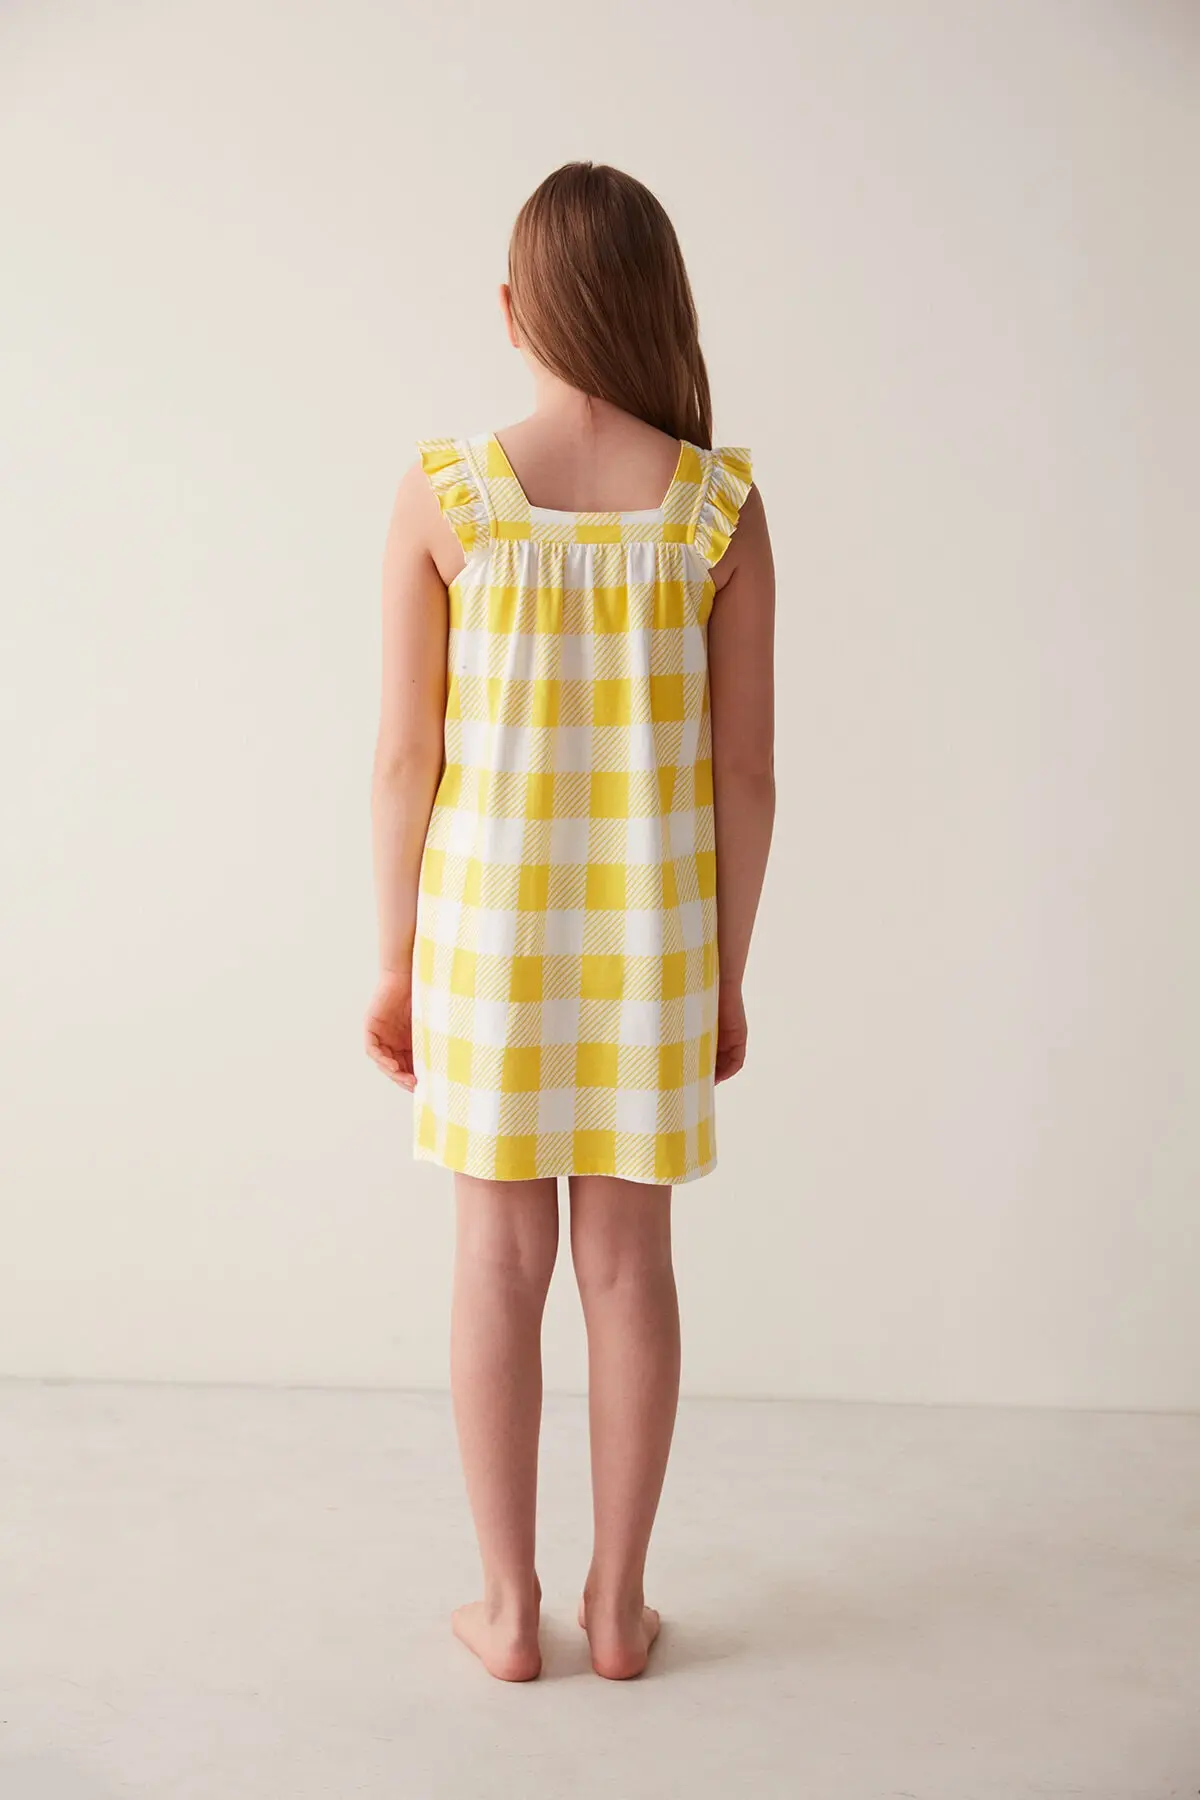 پیراهن چهارخانه چاپ دار دخترانه سفید زرد برند Penti